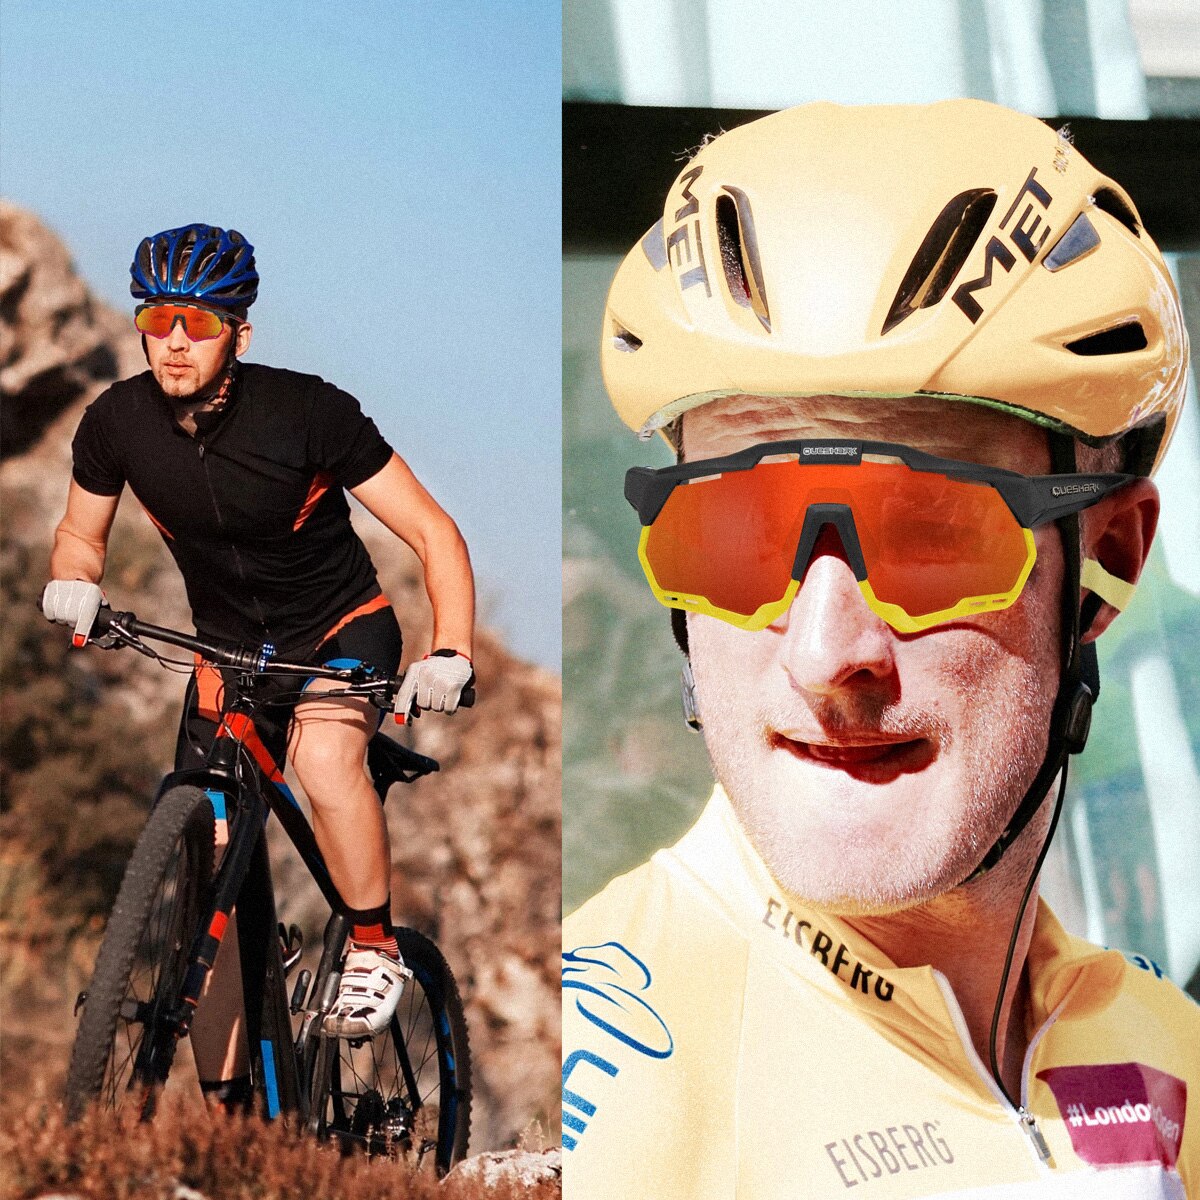 <transcy>QE52 ​​Occhiali da ciclismo polarizzati blu bianchi Occhiali da sole sportivi da donna per uomo con montatura/lente sostituibile</transcy>